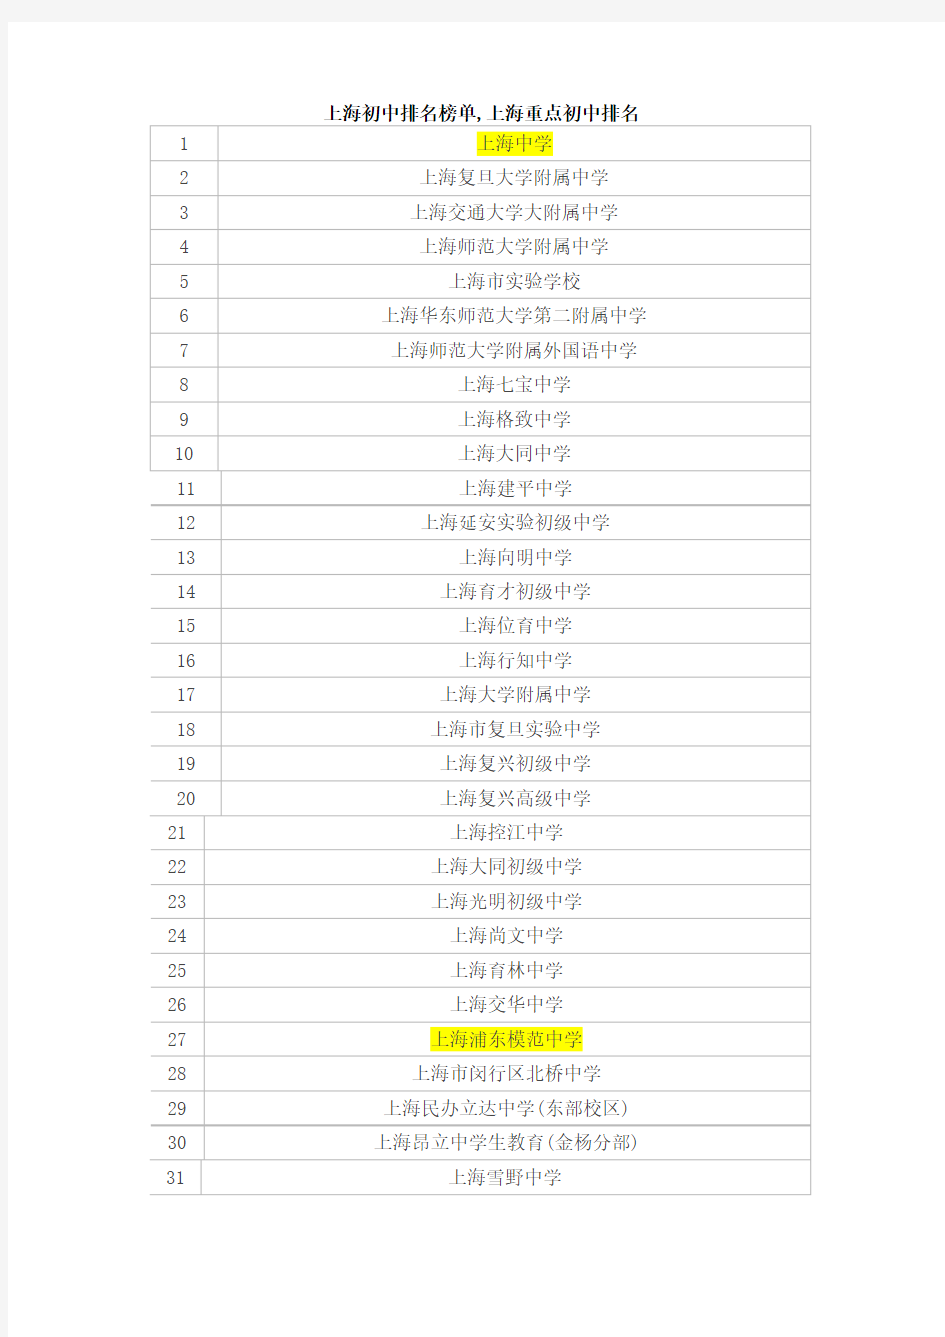 上海初中排名榜单